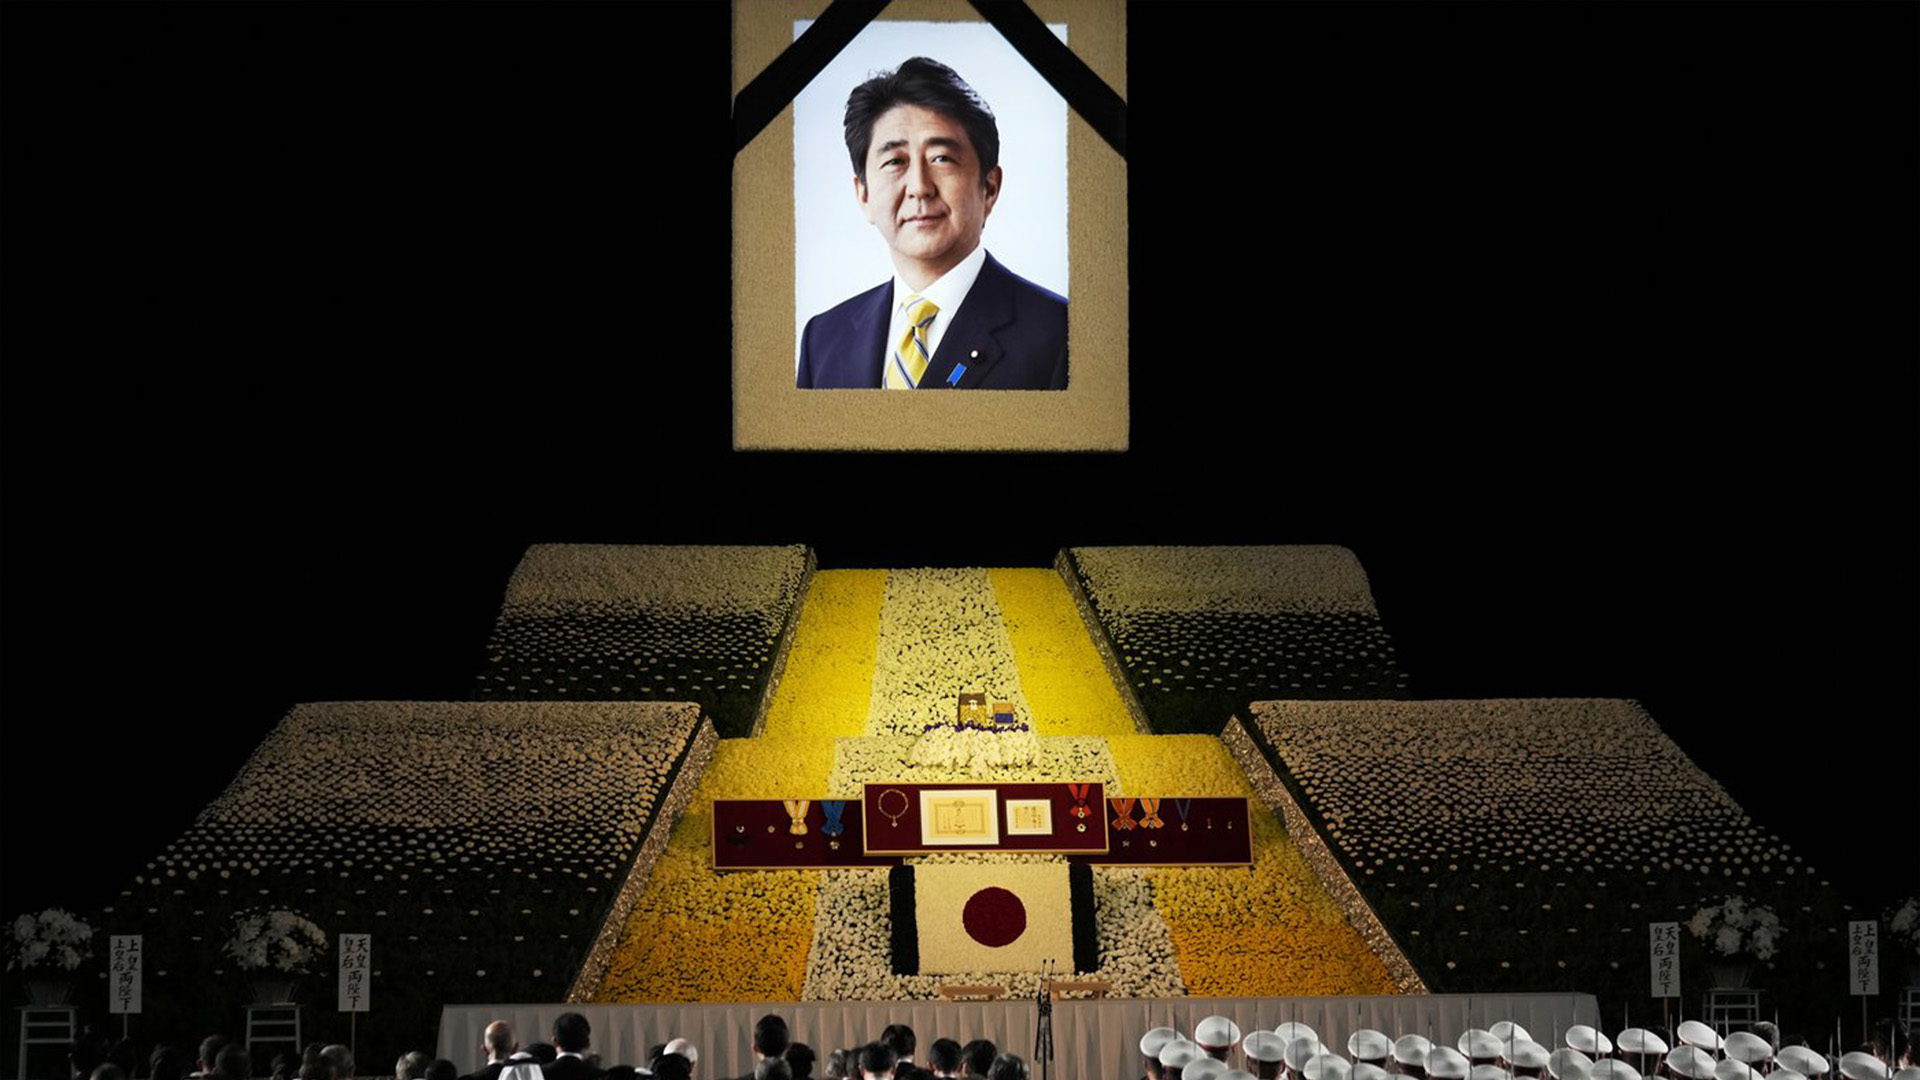 Un portrait de l'ancien Premier ministre japonais Shinzo Abe est accroché sur scène lors de ses funérailles d'État, le mardi 27 septembre 2022, à Tokyo. Abe a été assassiné en juillet.